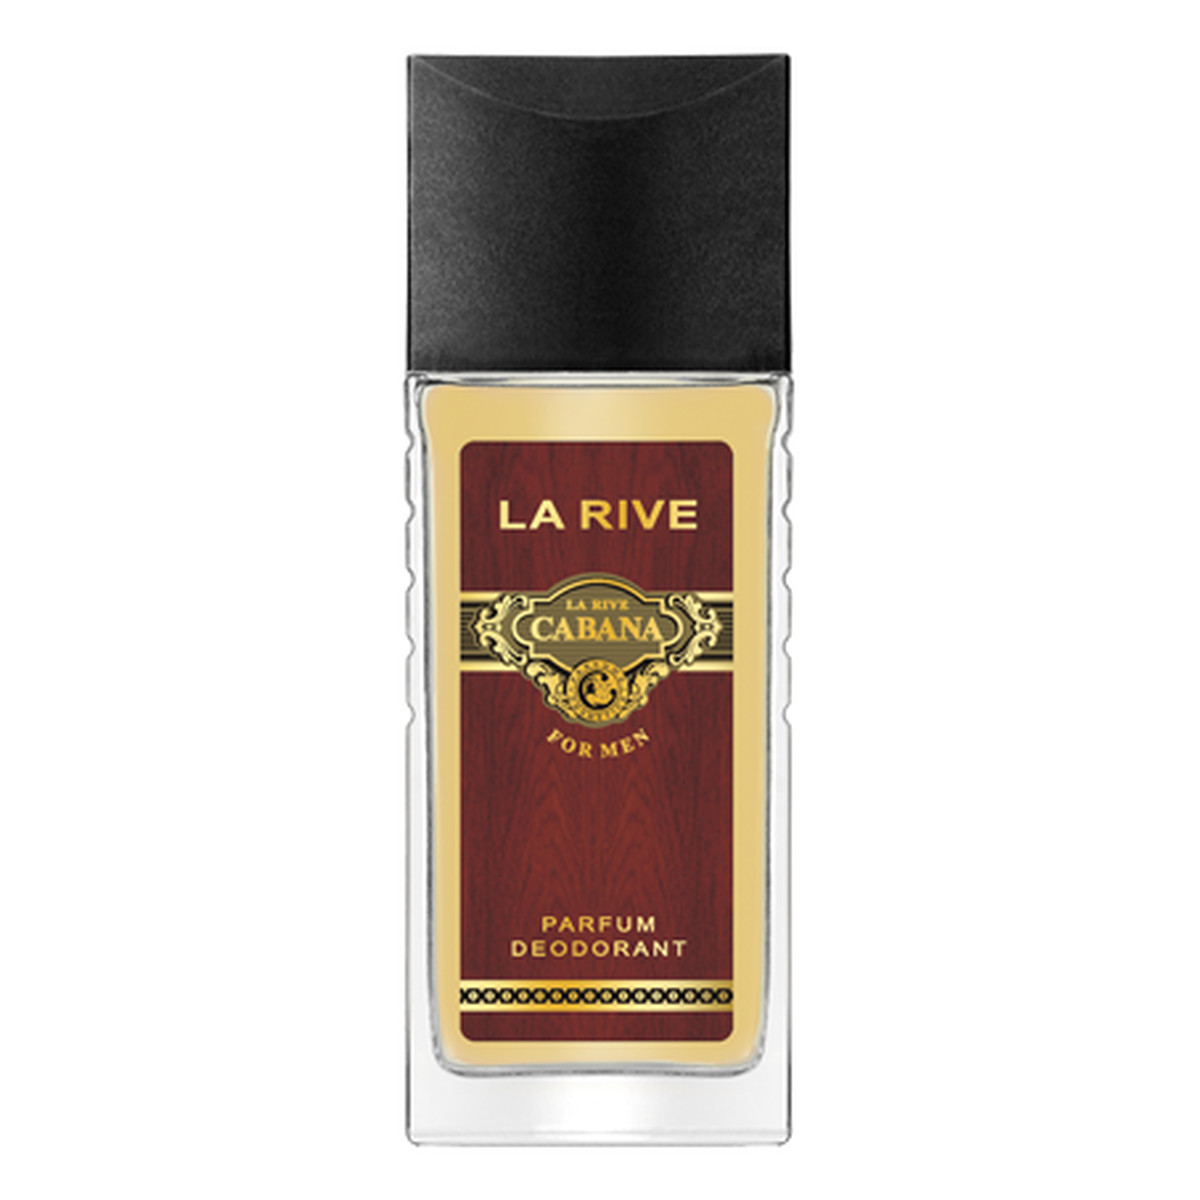 La Rive Cabana Men Dezodorant Perfumowany 80ml